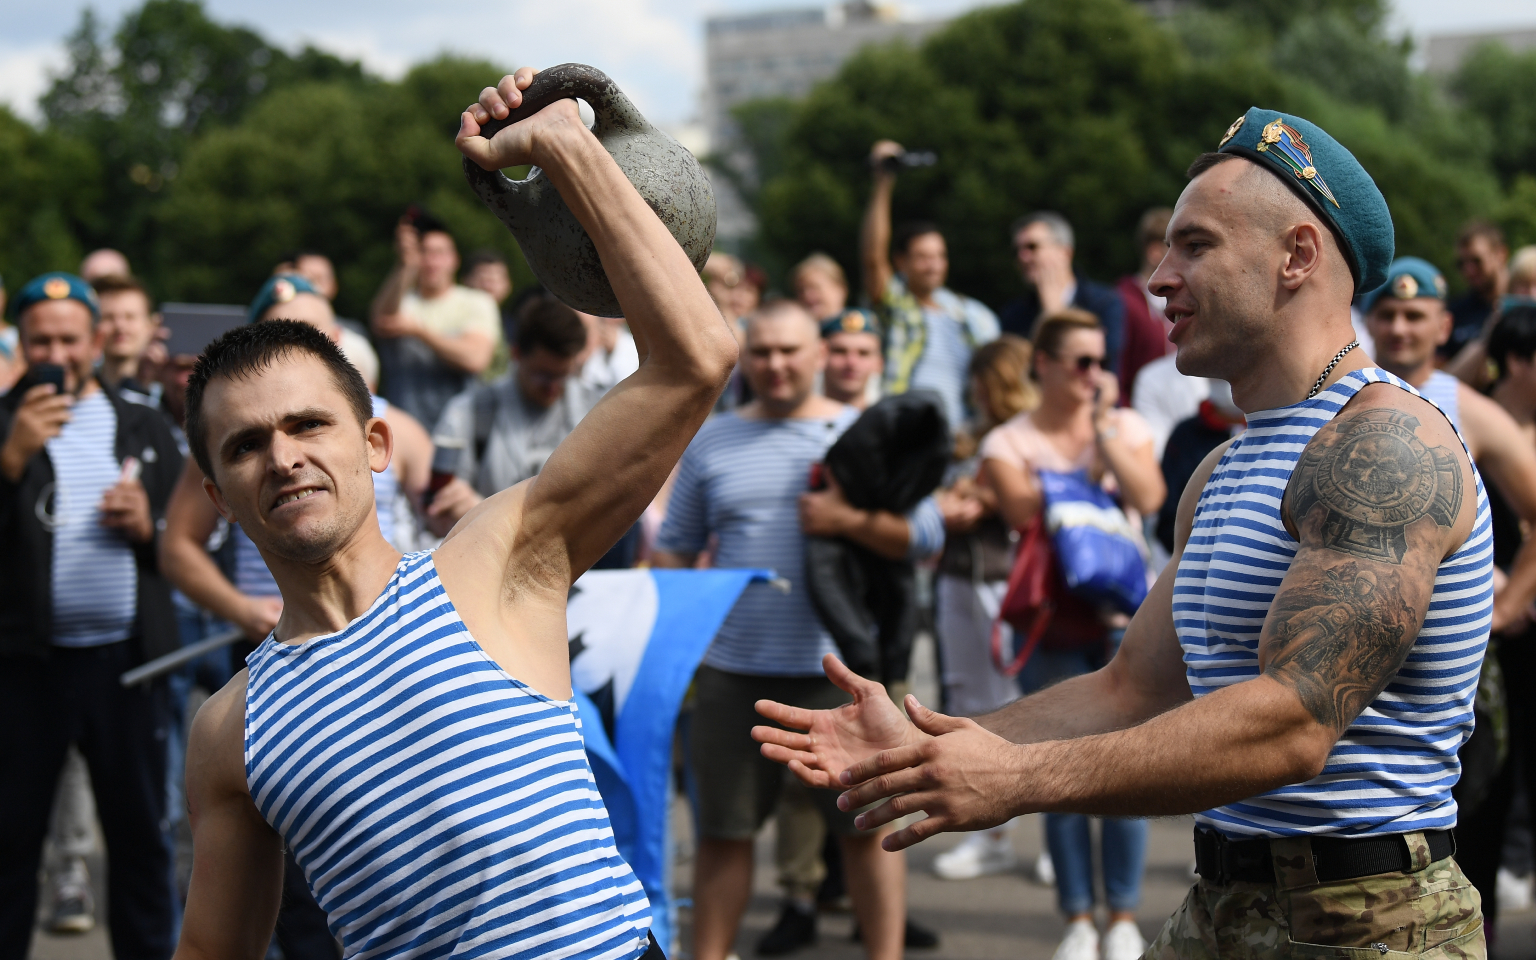 Активисты «Лев против» и десантники устроили потасовку в Парке Горького